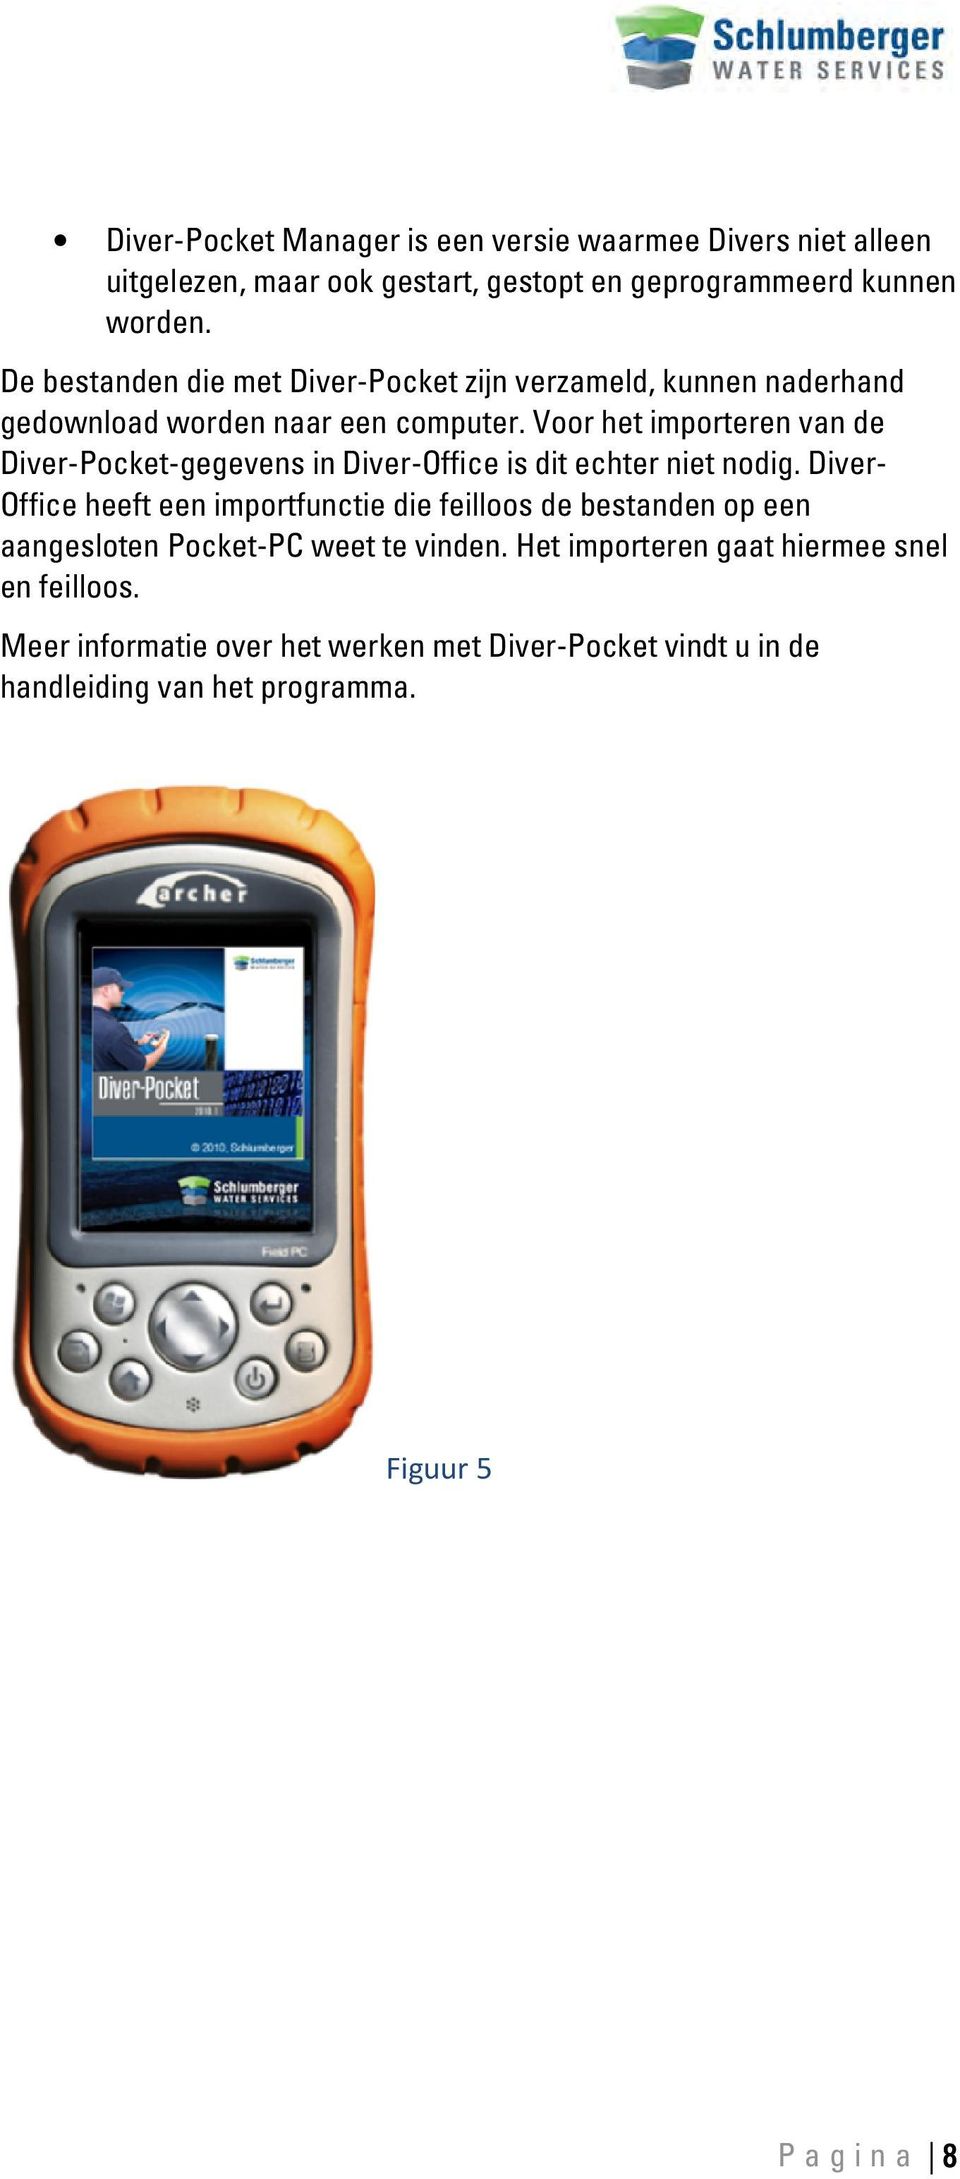 Voor het importeren van de Diver-Pocket-gegevens in Diver-ffice is dit echter niet nodig.